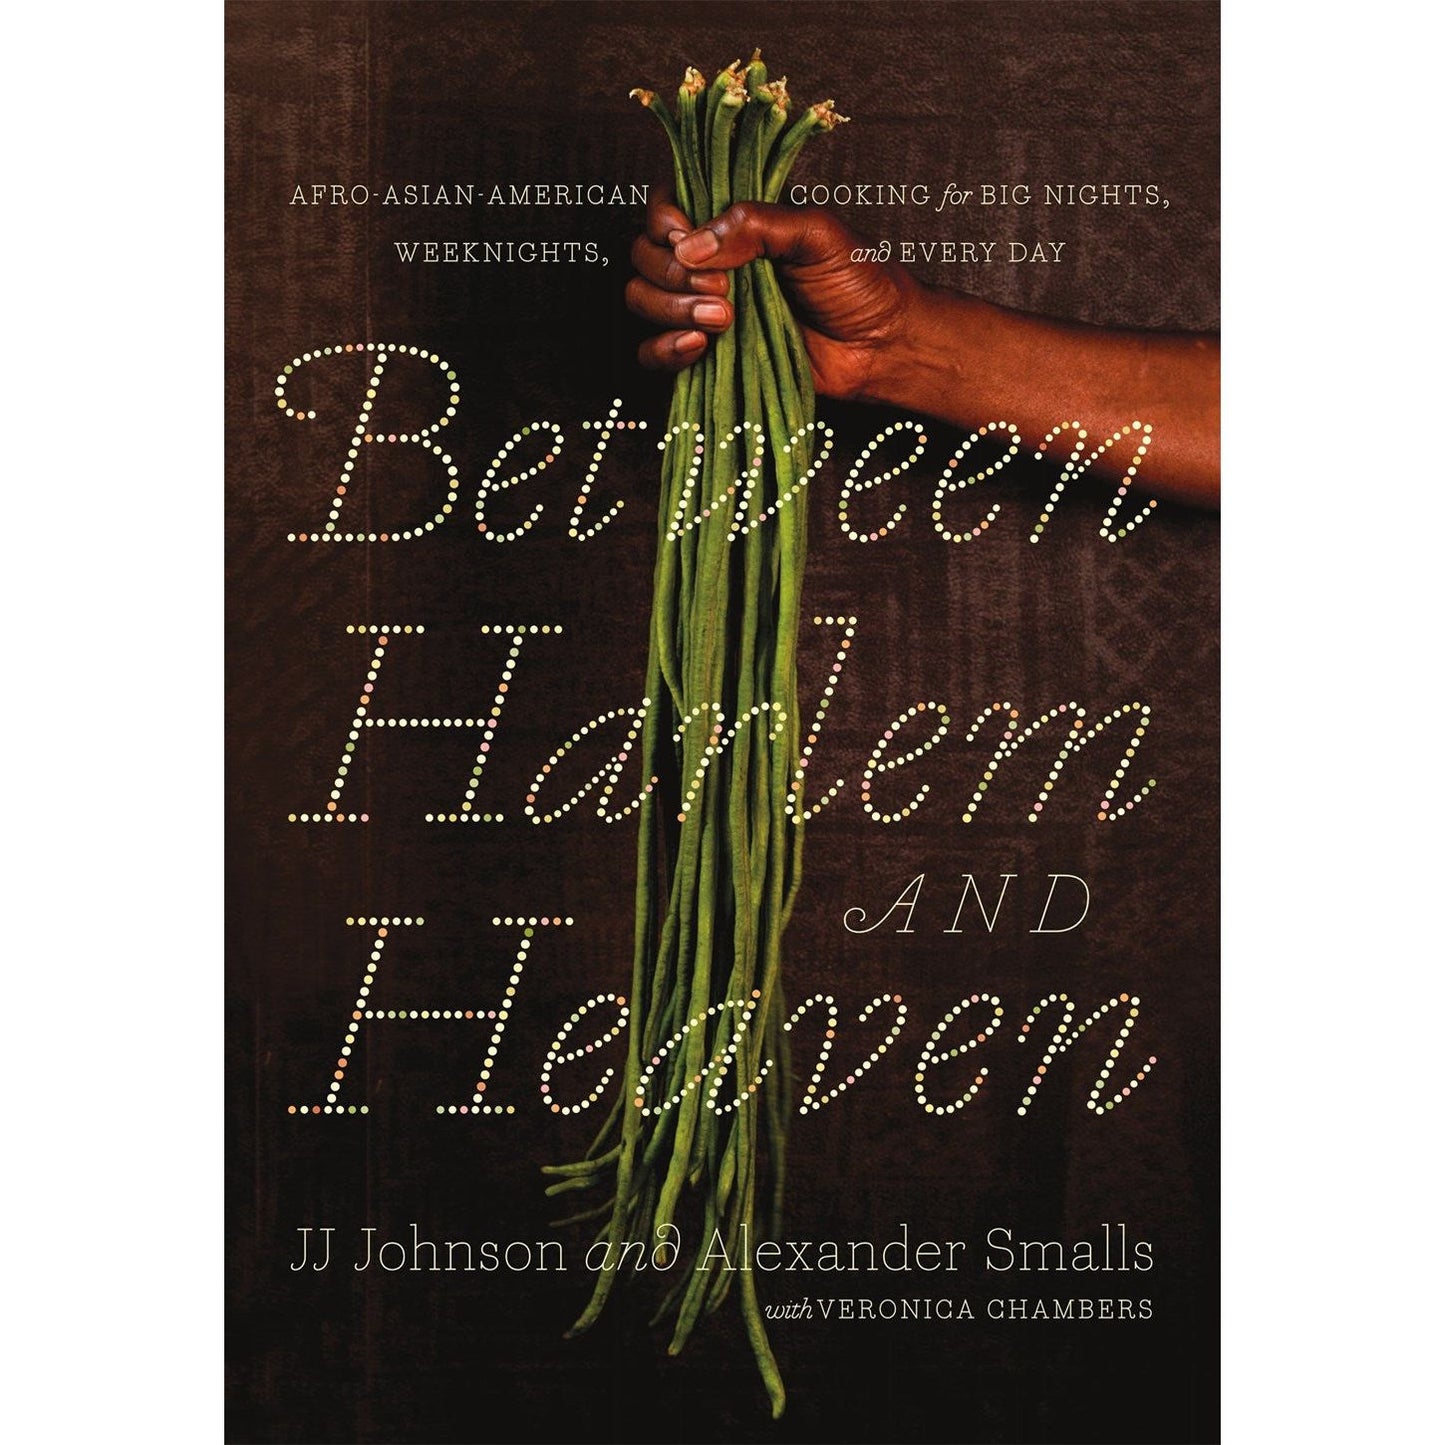 Between Harlem & Heaven (JJ Johnson & Alexander Smalls)